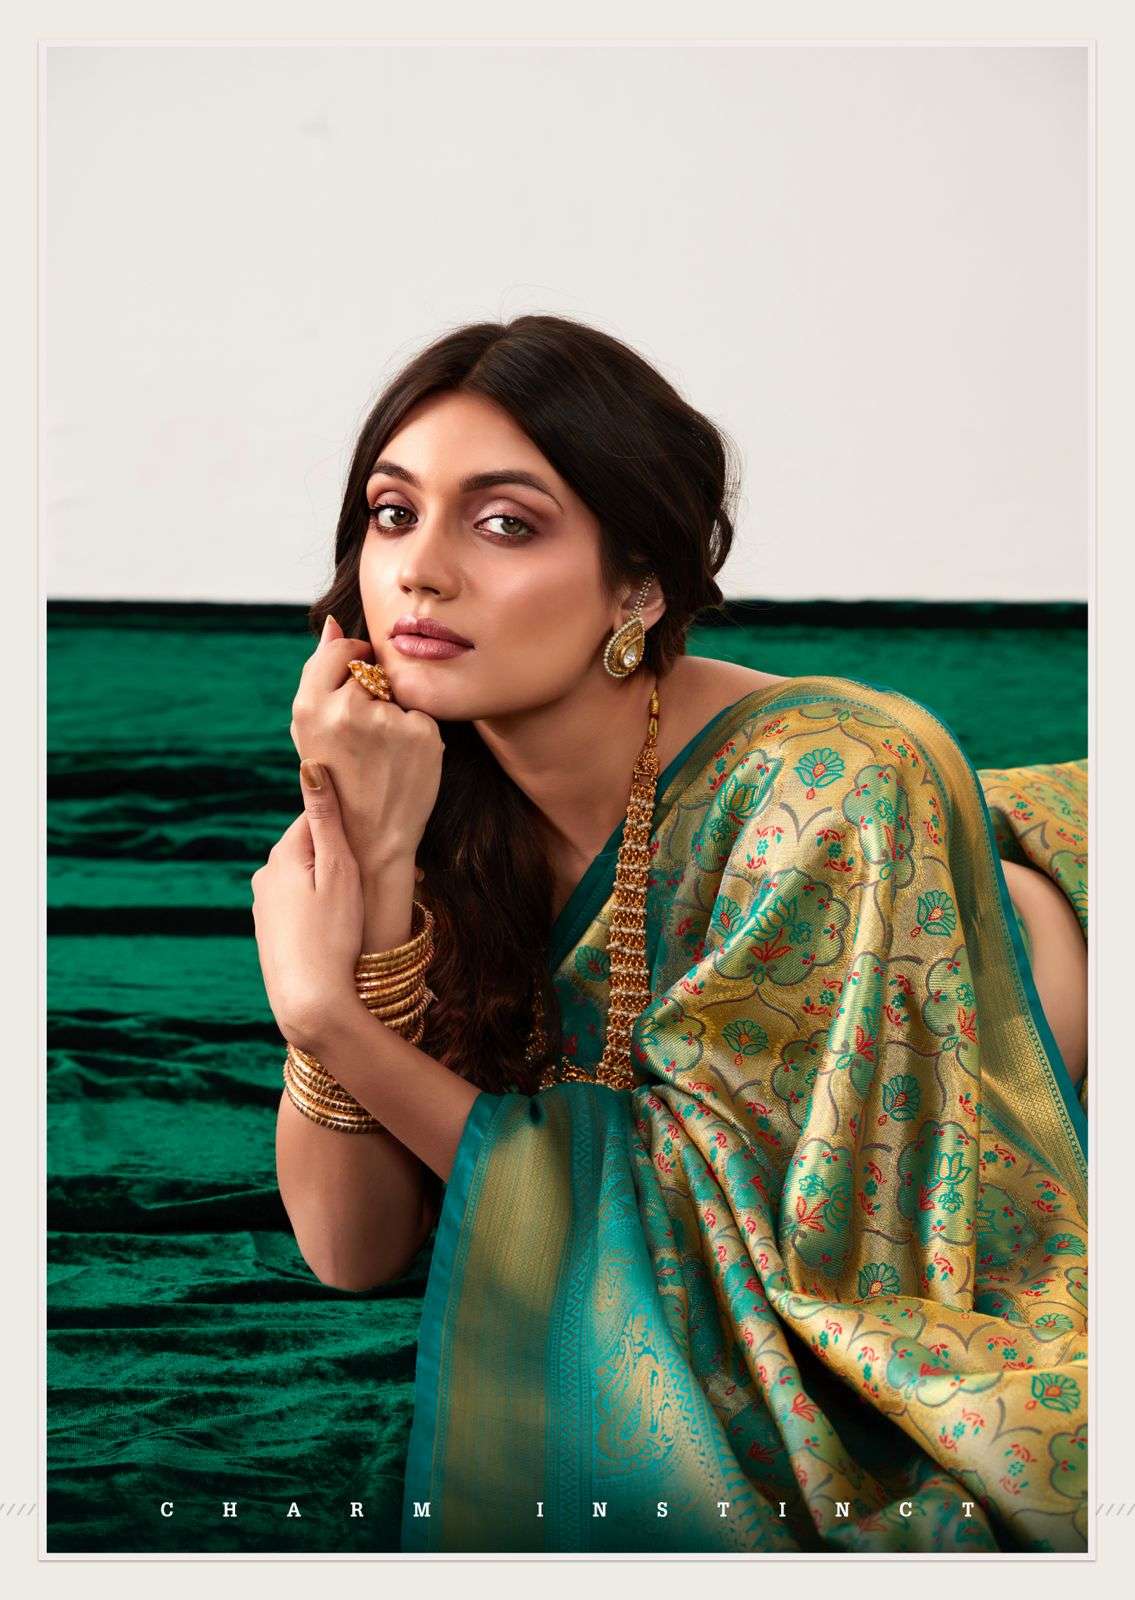 rajpath rachita silk dharmavaram silk elegant saree catalog